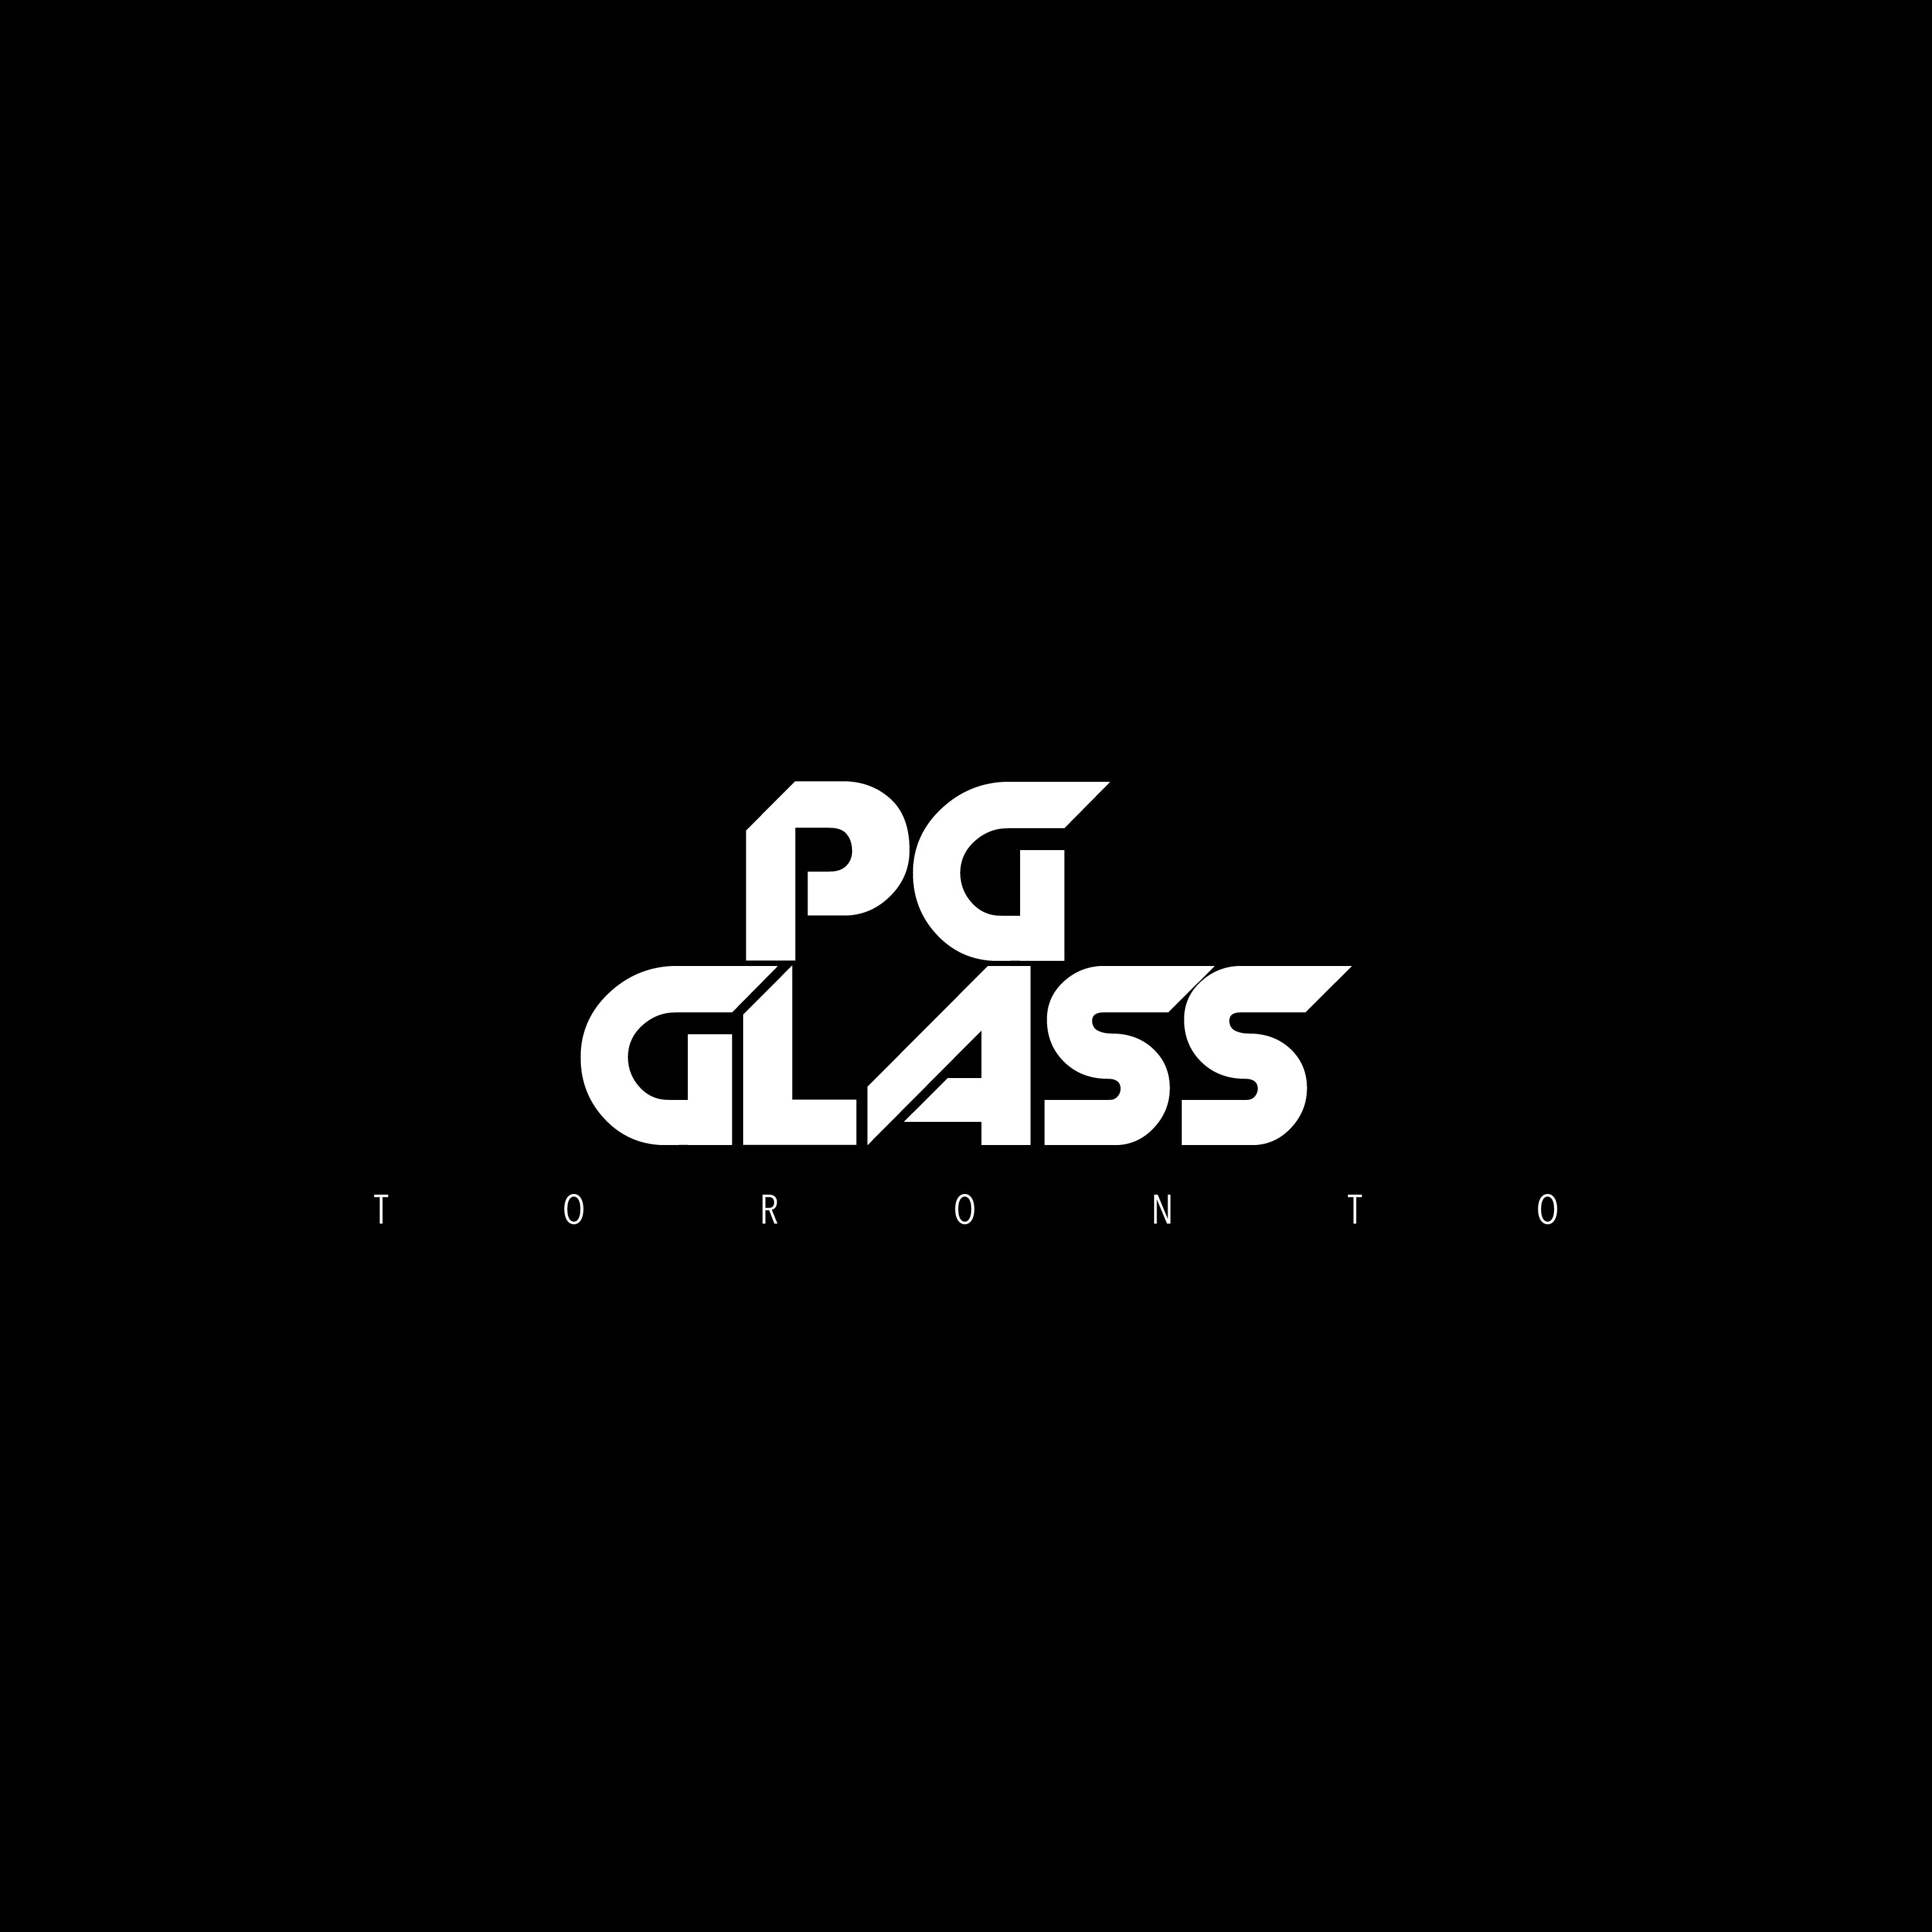 PG GLASS's logo